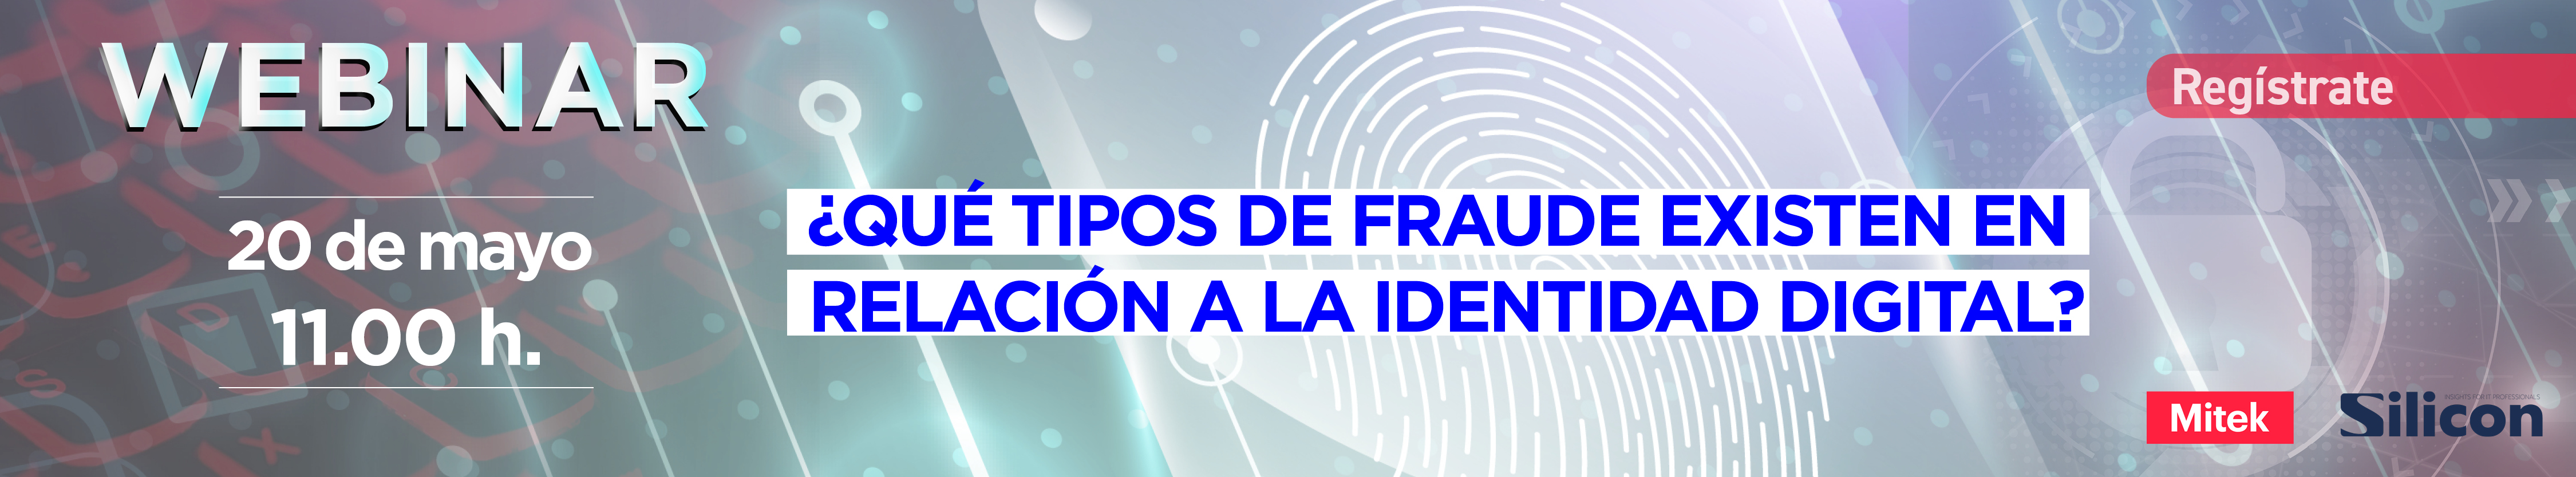 Webinar: ¿Qué tipos de fraude existen en relación a la identidad digital?